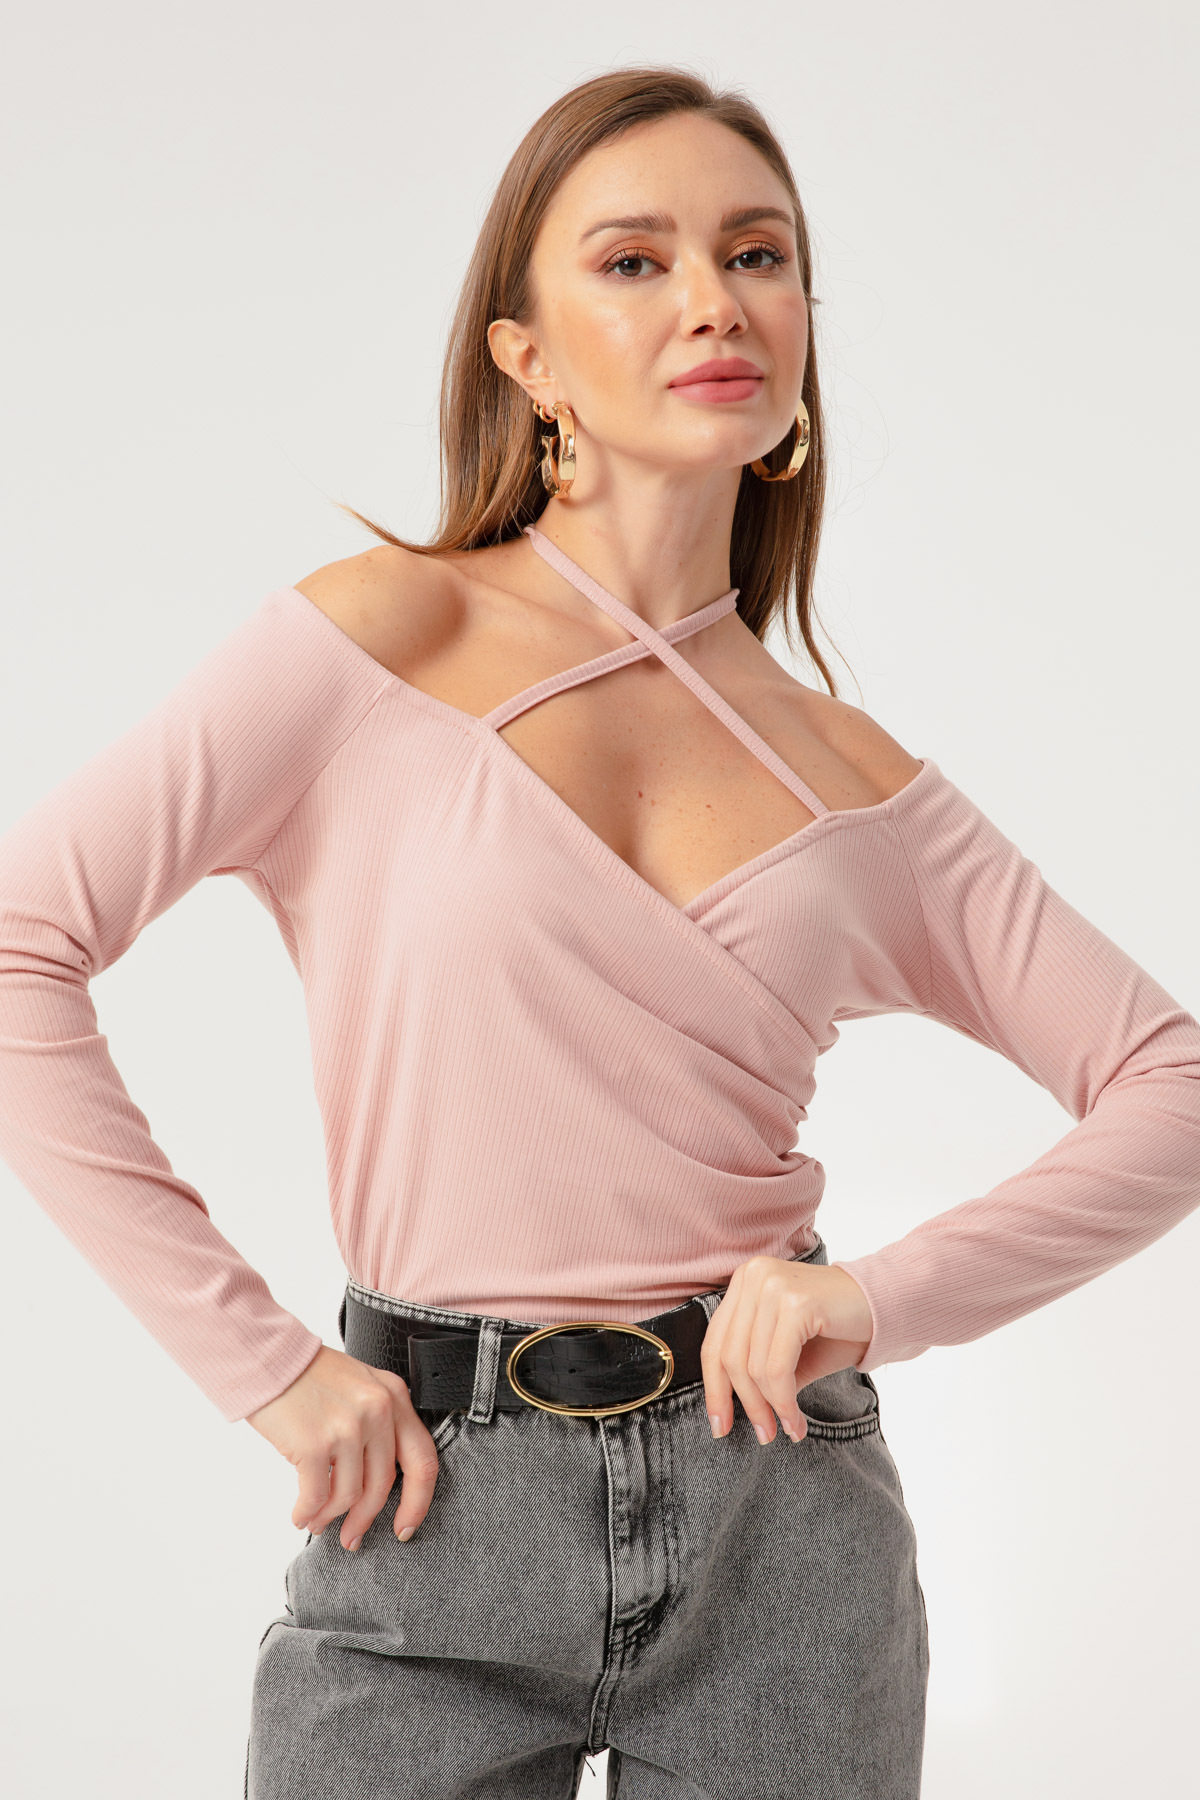 Женская трикотажная блузка пудрового цвета с завязками Lafaba, розовый